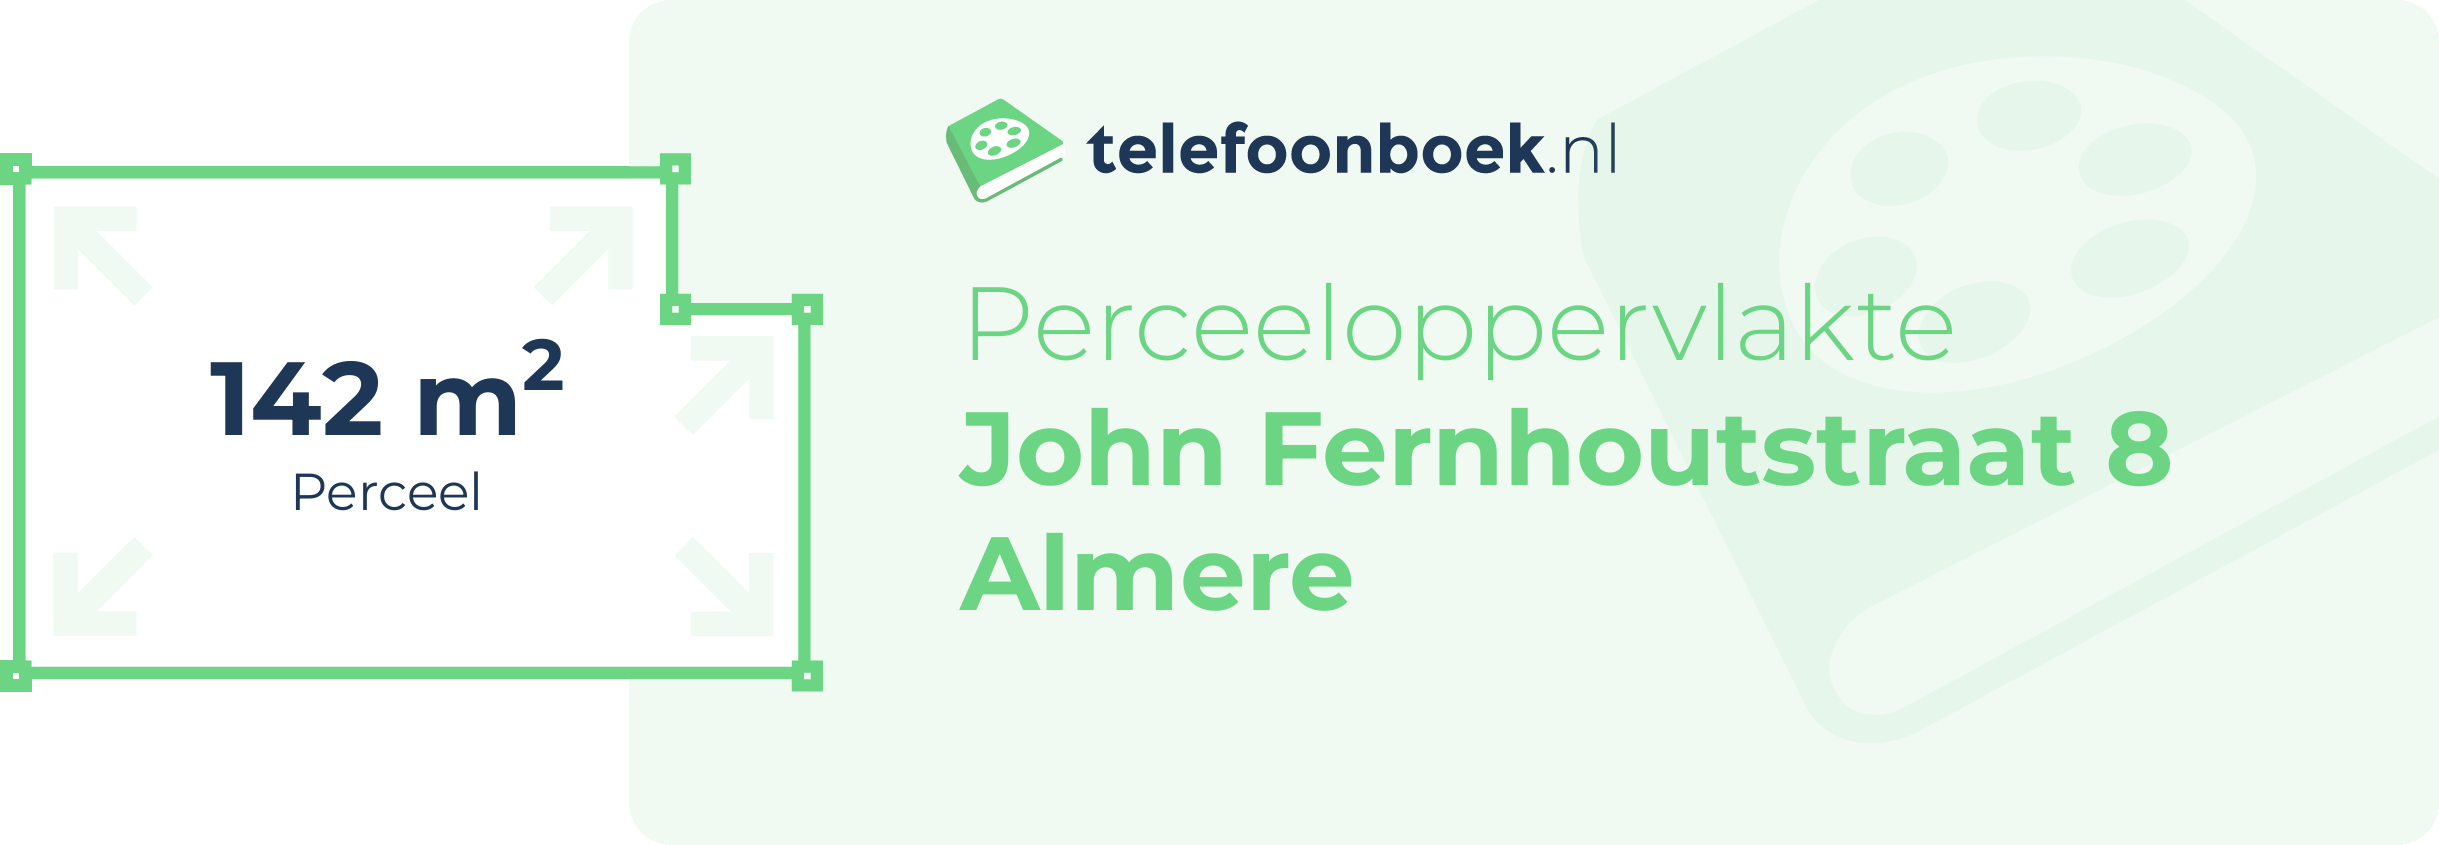 Perceeloppervlakte John Fernhoutstraat 8 Almere